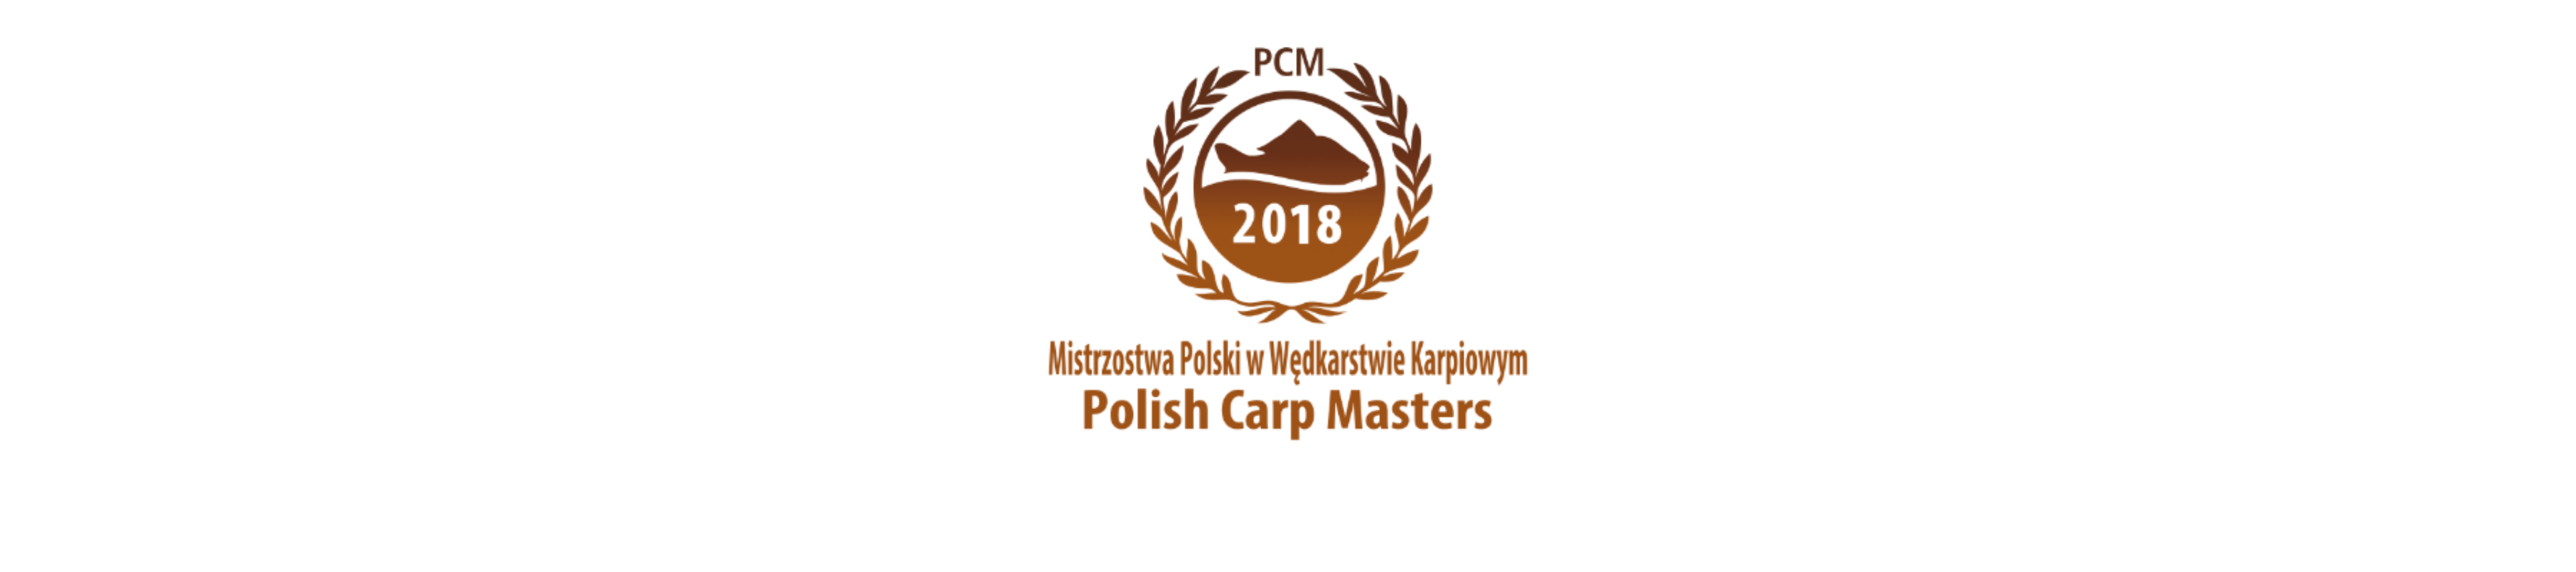 PCM 2018